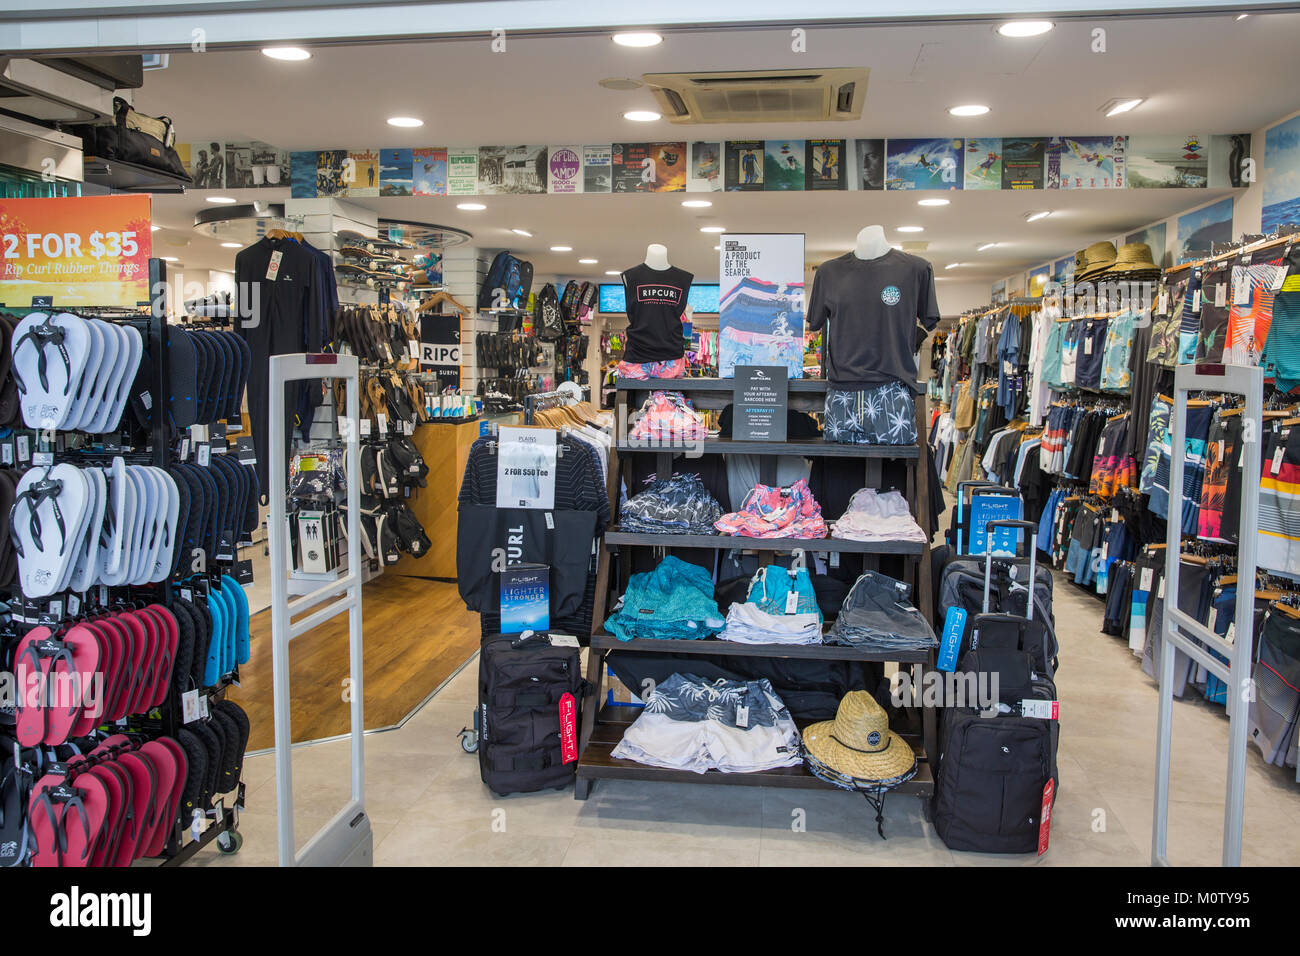 Rip culr store à Port Douglas la vente de vêtements de plage et de surf, Far North Queensland, Australie Banque D'Images